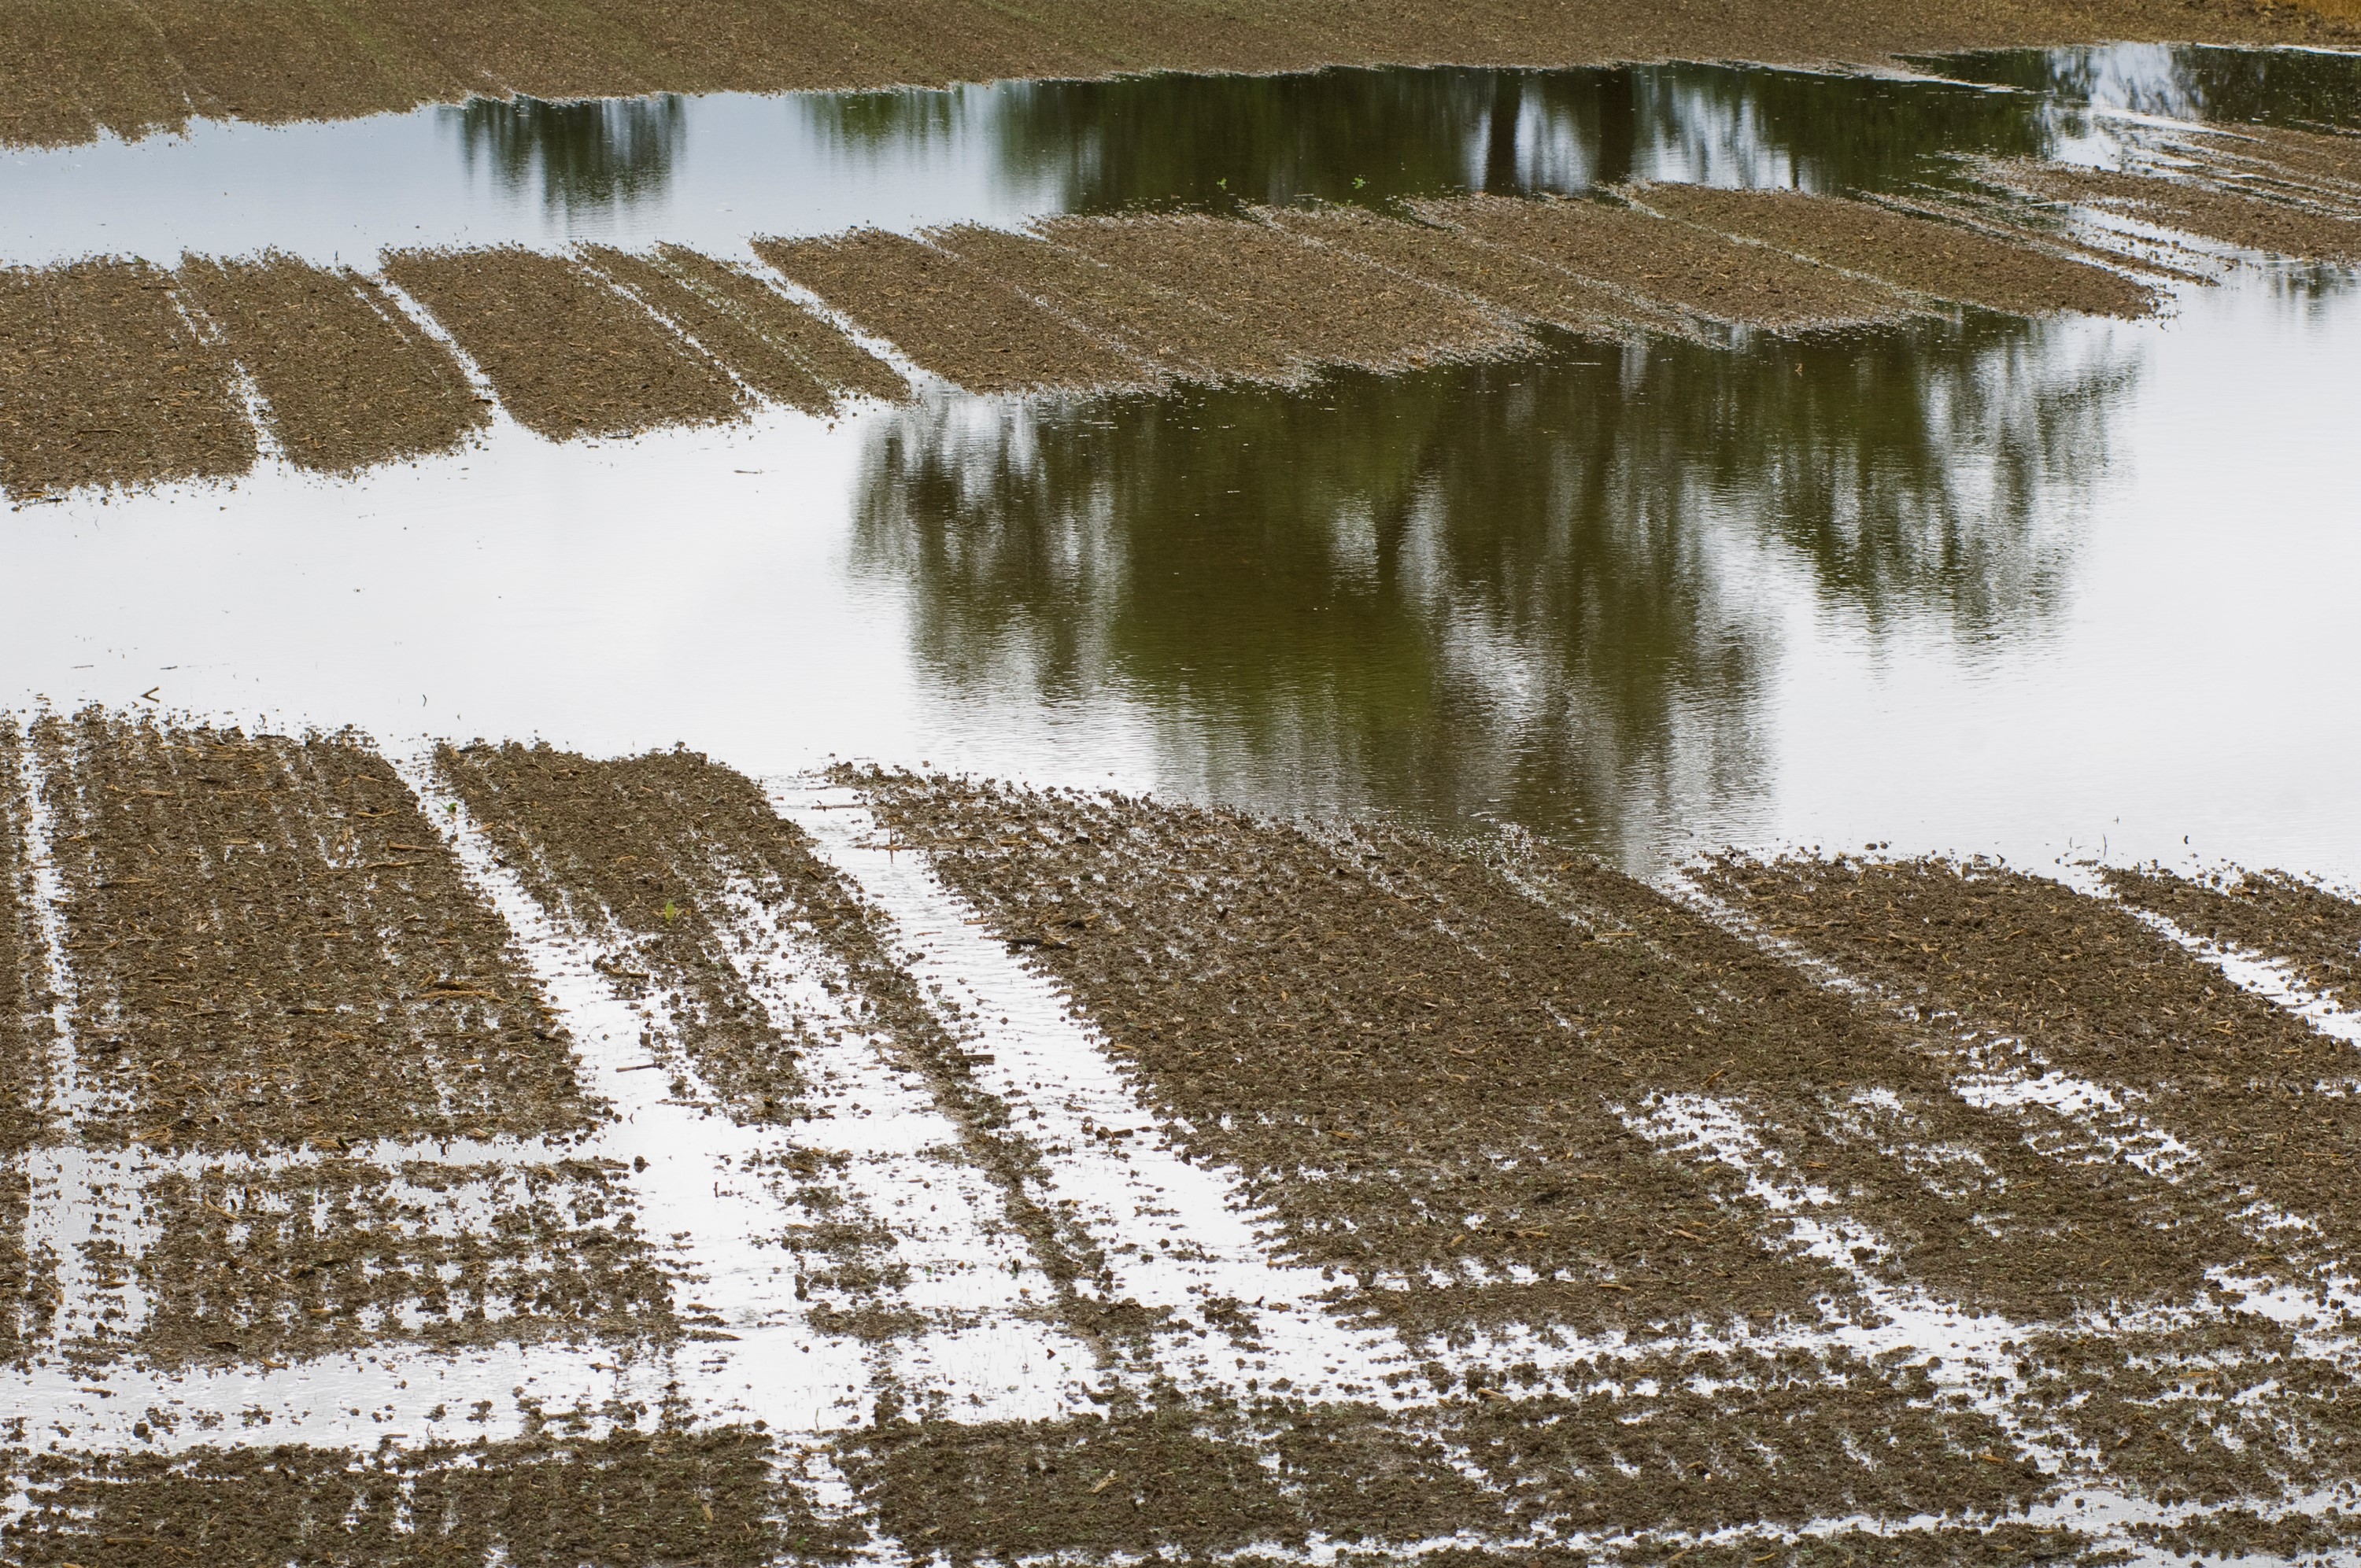 Copyright. Agroscope - Le compactage des sols a engendré une diminution de la capacité d’infiltration dans les sols provoquant une augmentation du risque d’inondation.